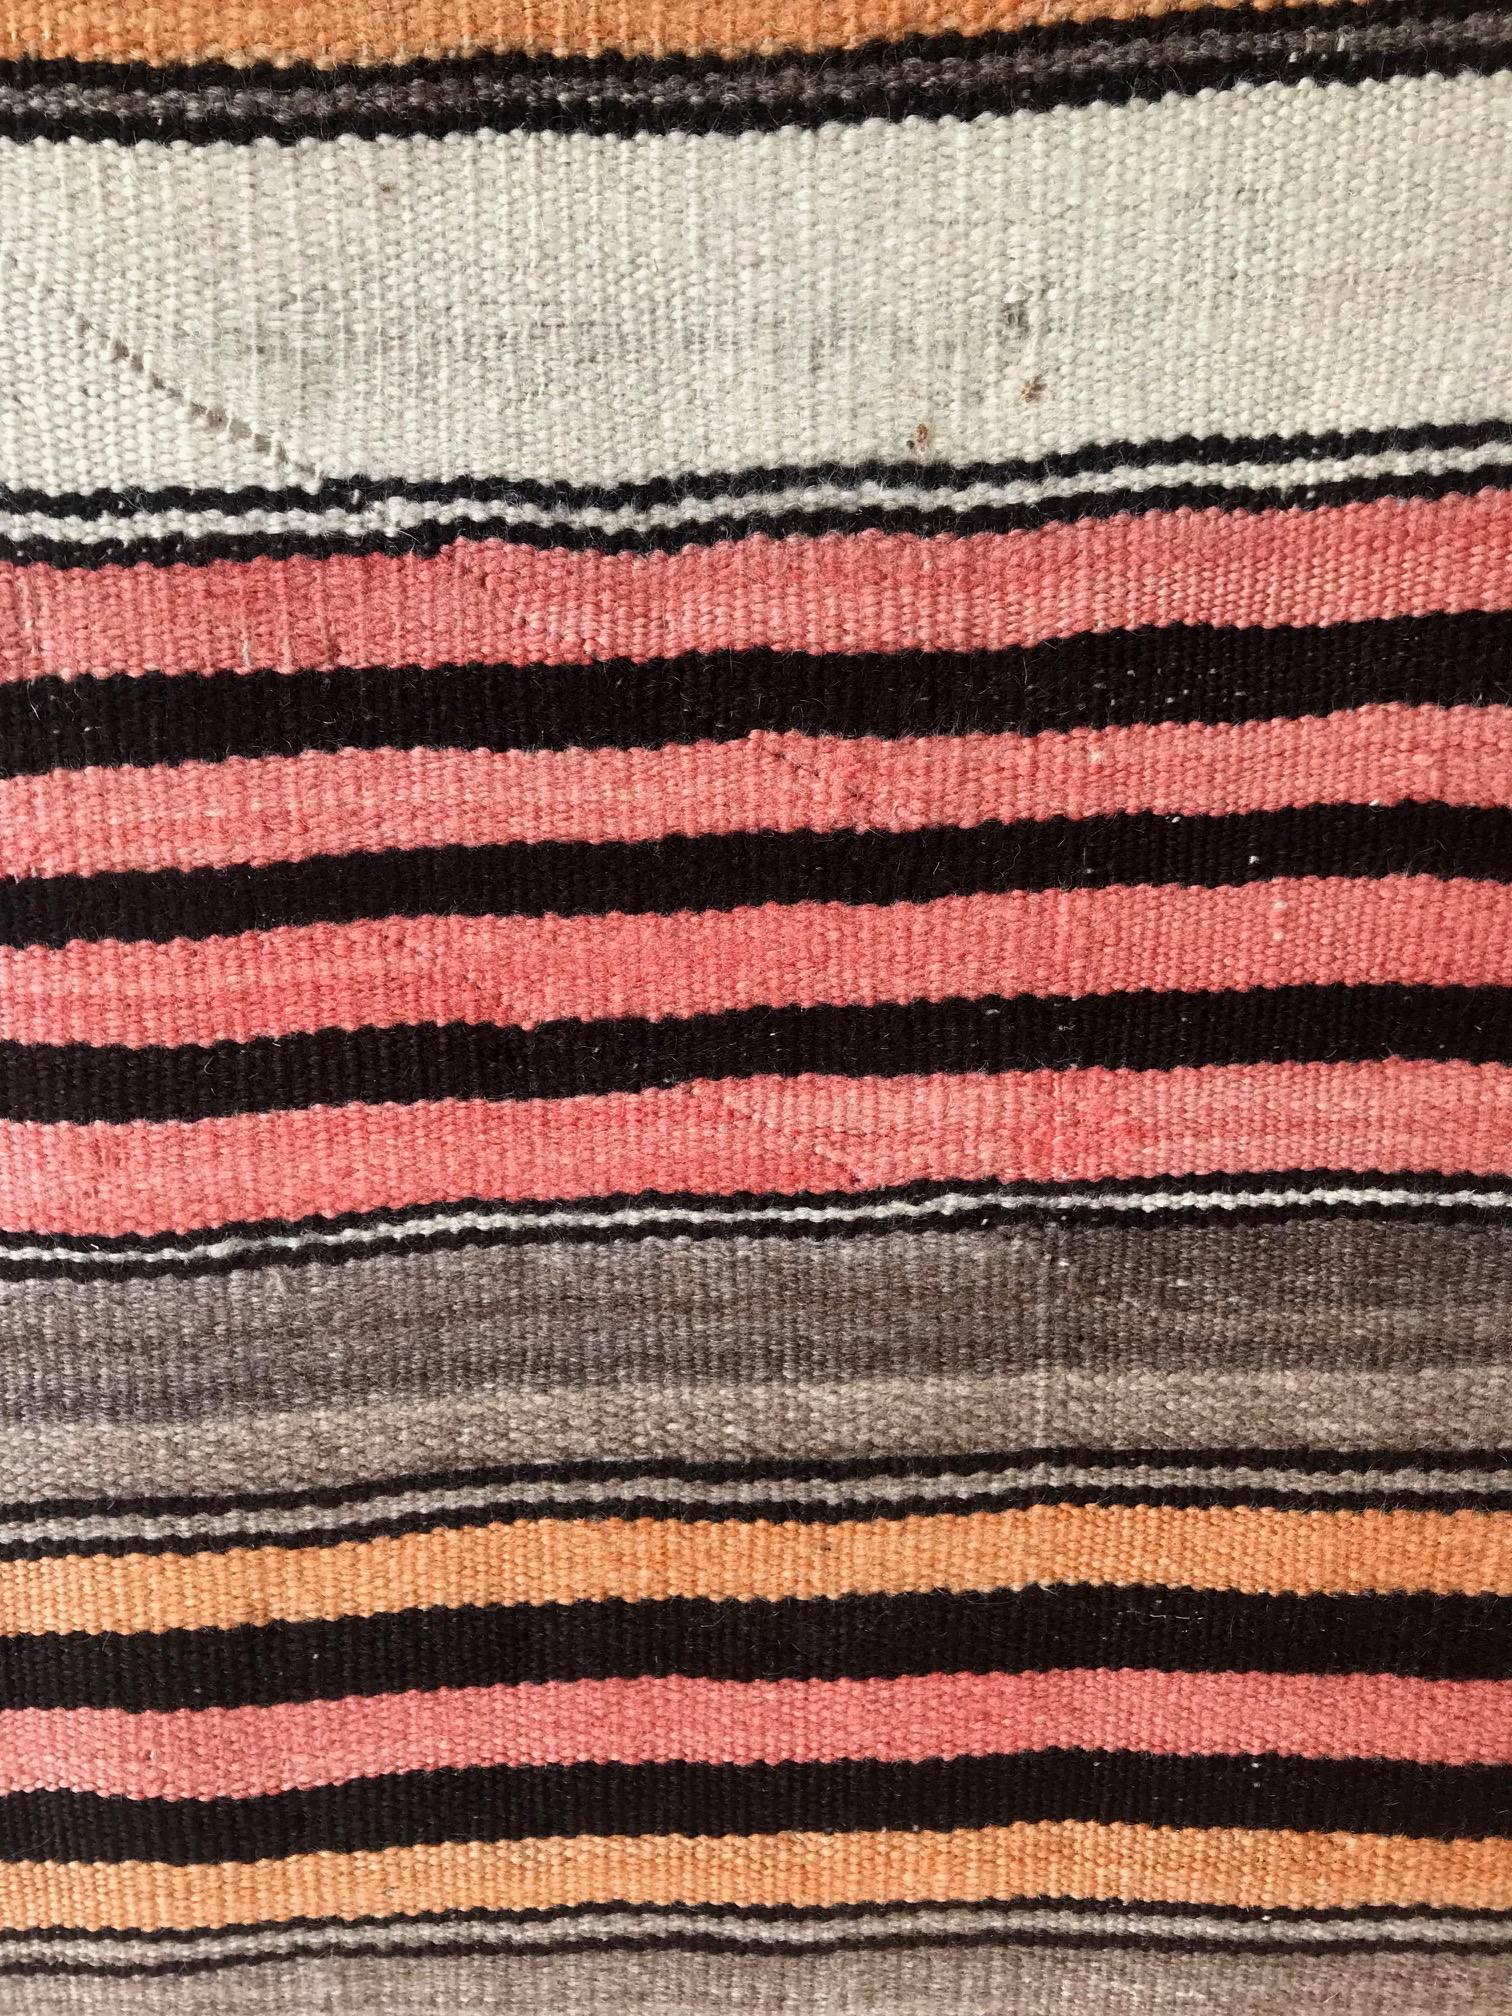 American Old Navajo Banded Blanket Diyog Weaving